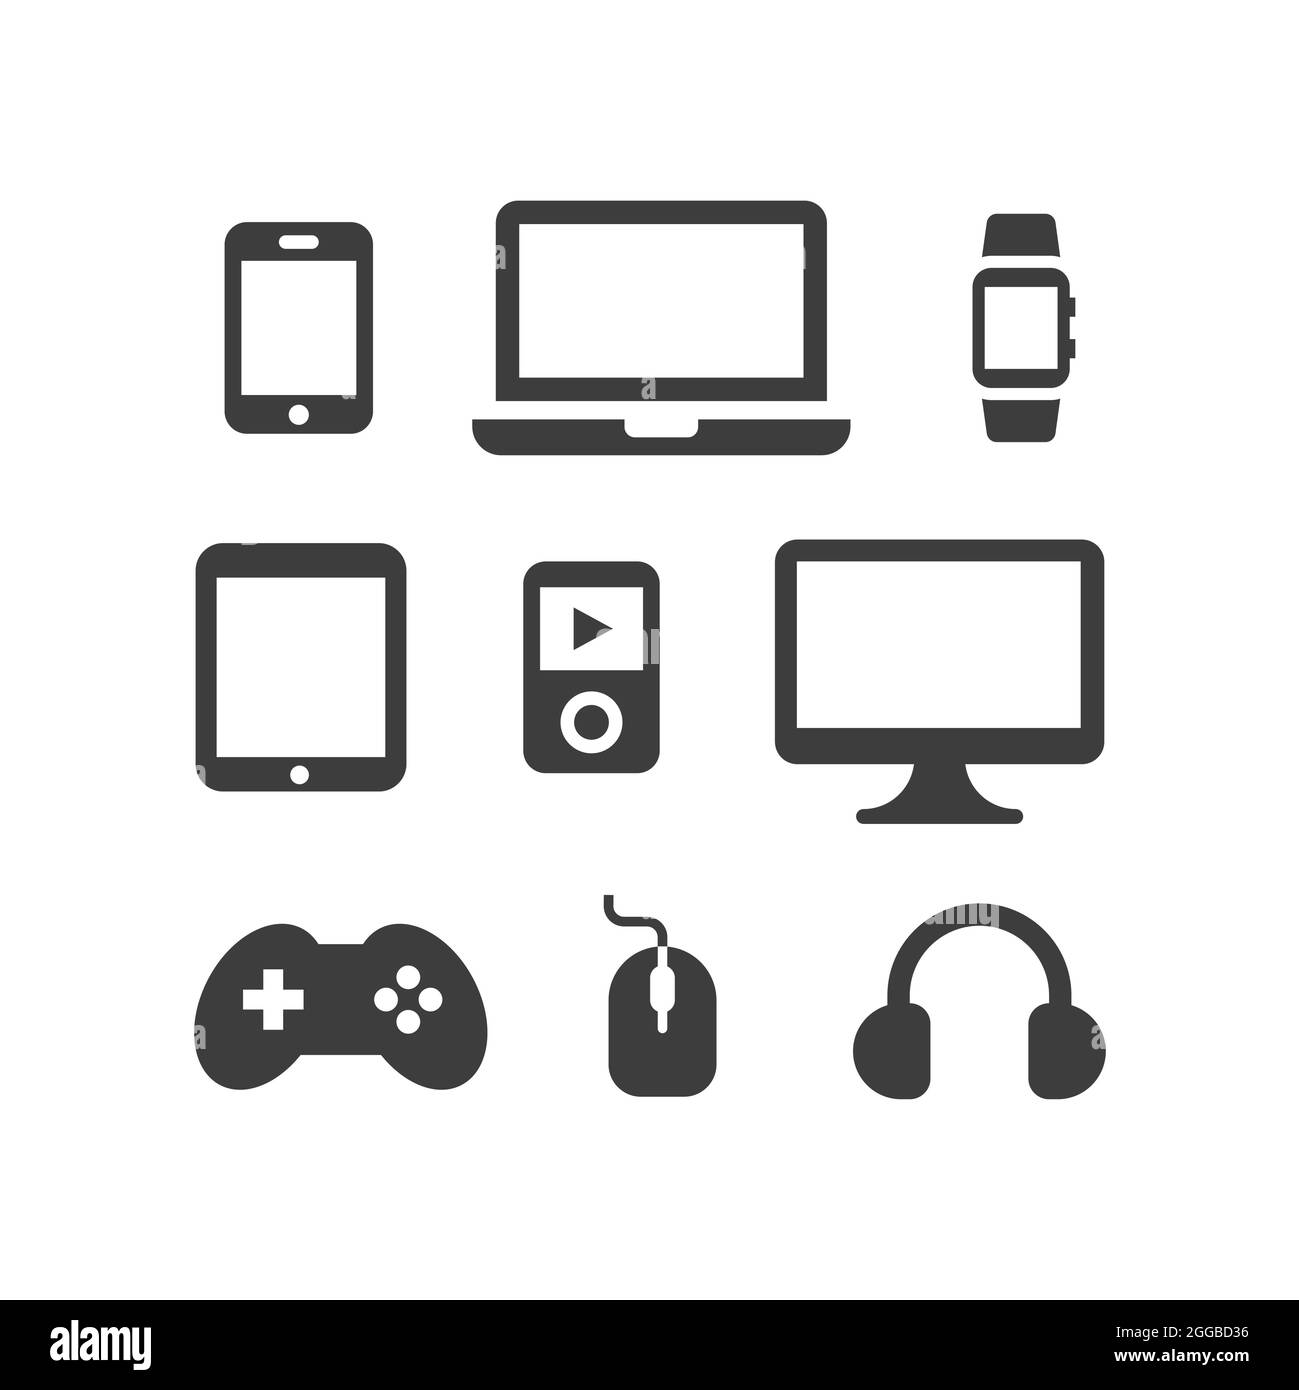 Elektronik, Vektorsymbole für Computergeräte. Fernseher, Laptop, Smartphone-Bildschirm, schwarze Symbole für digitale Geräte. Stock Vektor